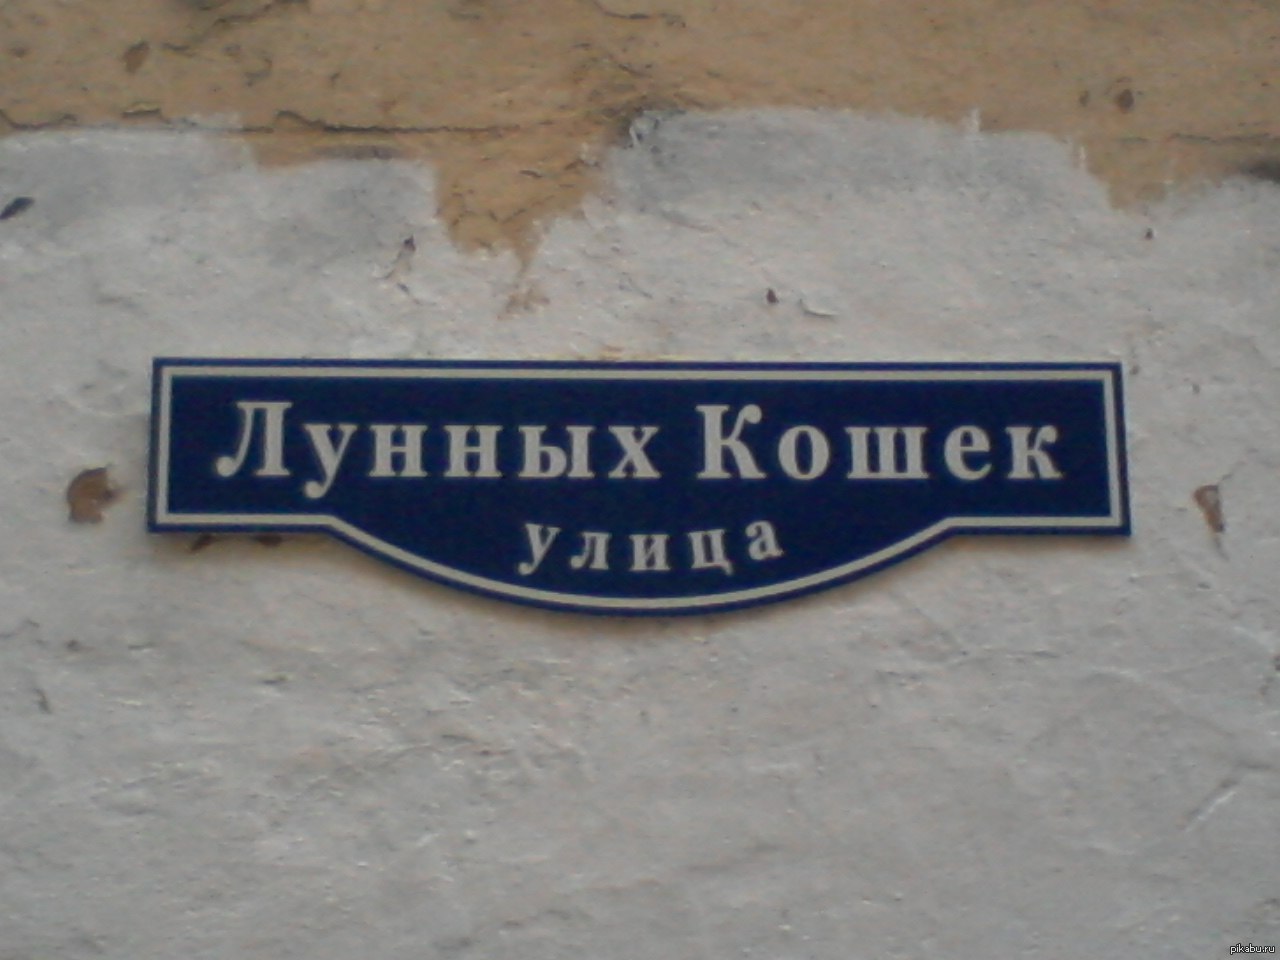 Смешные улицы москвы. Смешные названия улиц. Необычные названия улиц. Странные названия улиц. Странныемназвпния улиц.